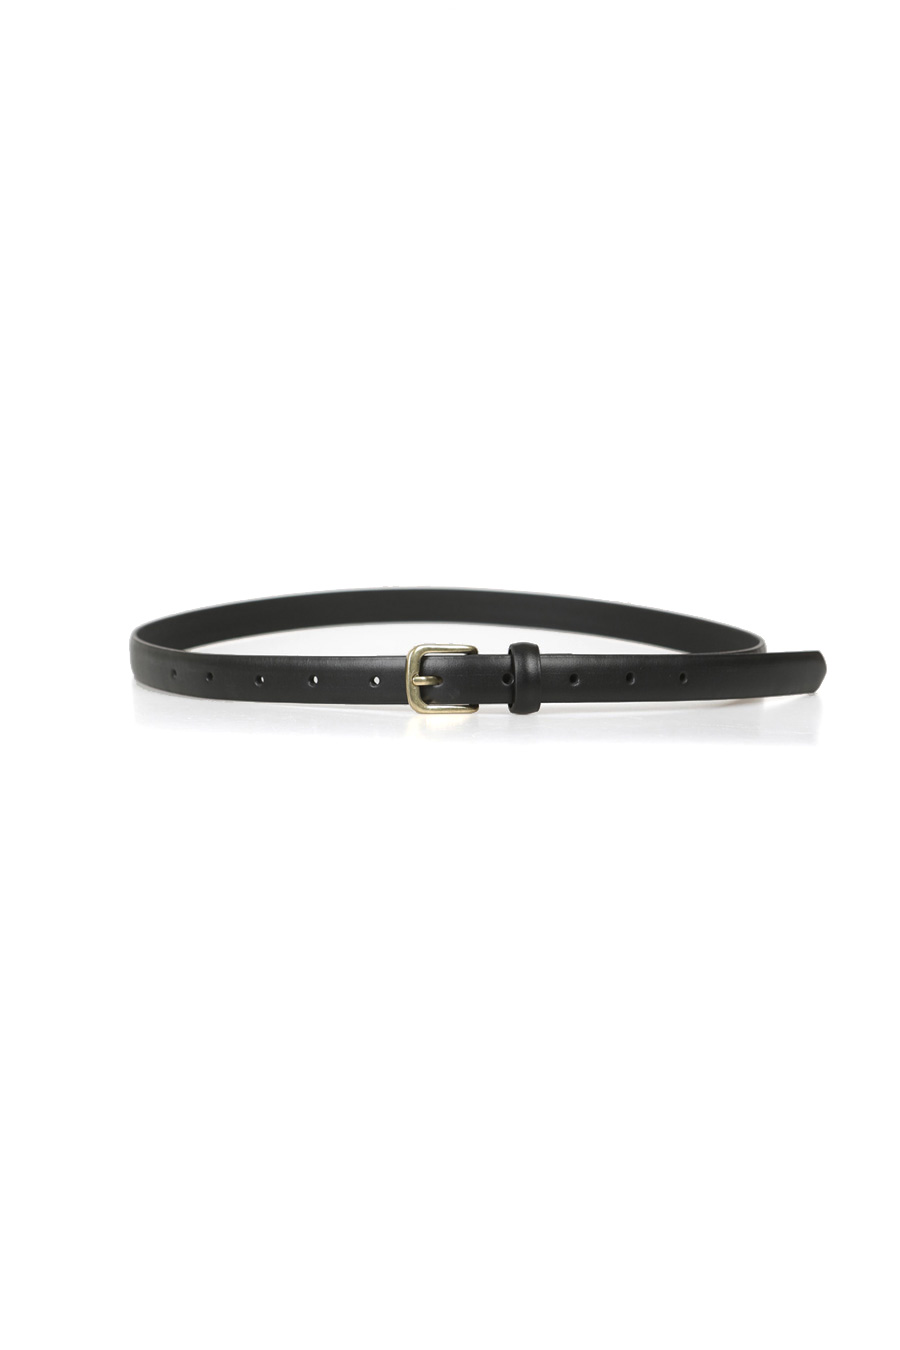 [DGSAC02]  Gold buckle belt